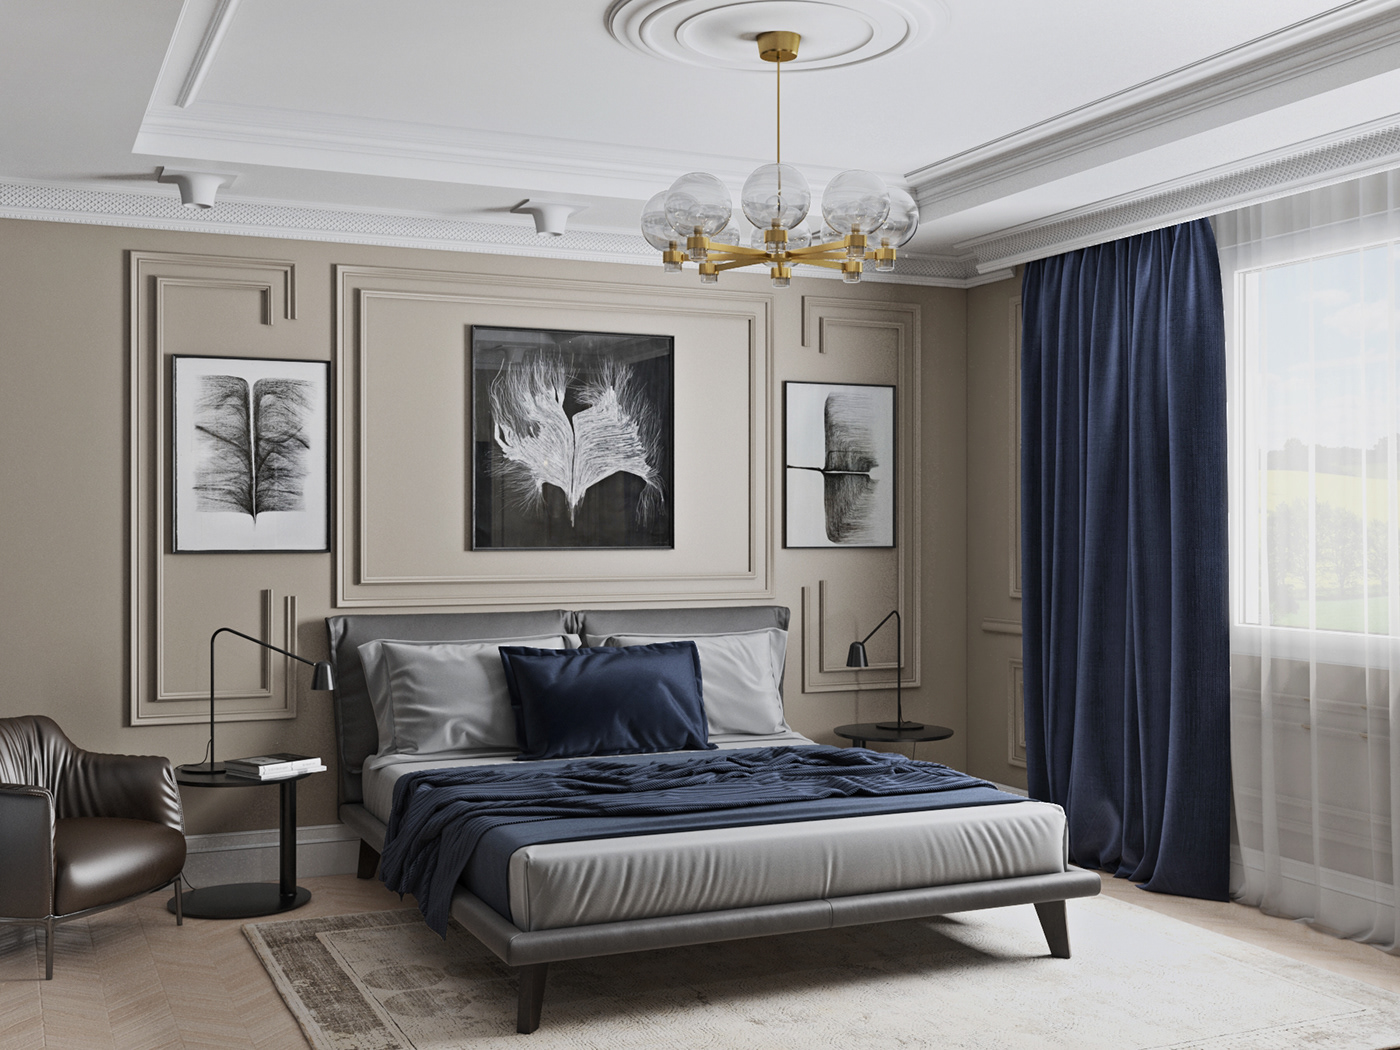 badroom neoclassic design Classic Interior room спальня неоклассика   дизайн интерьер